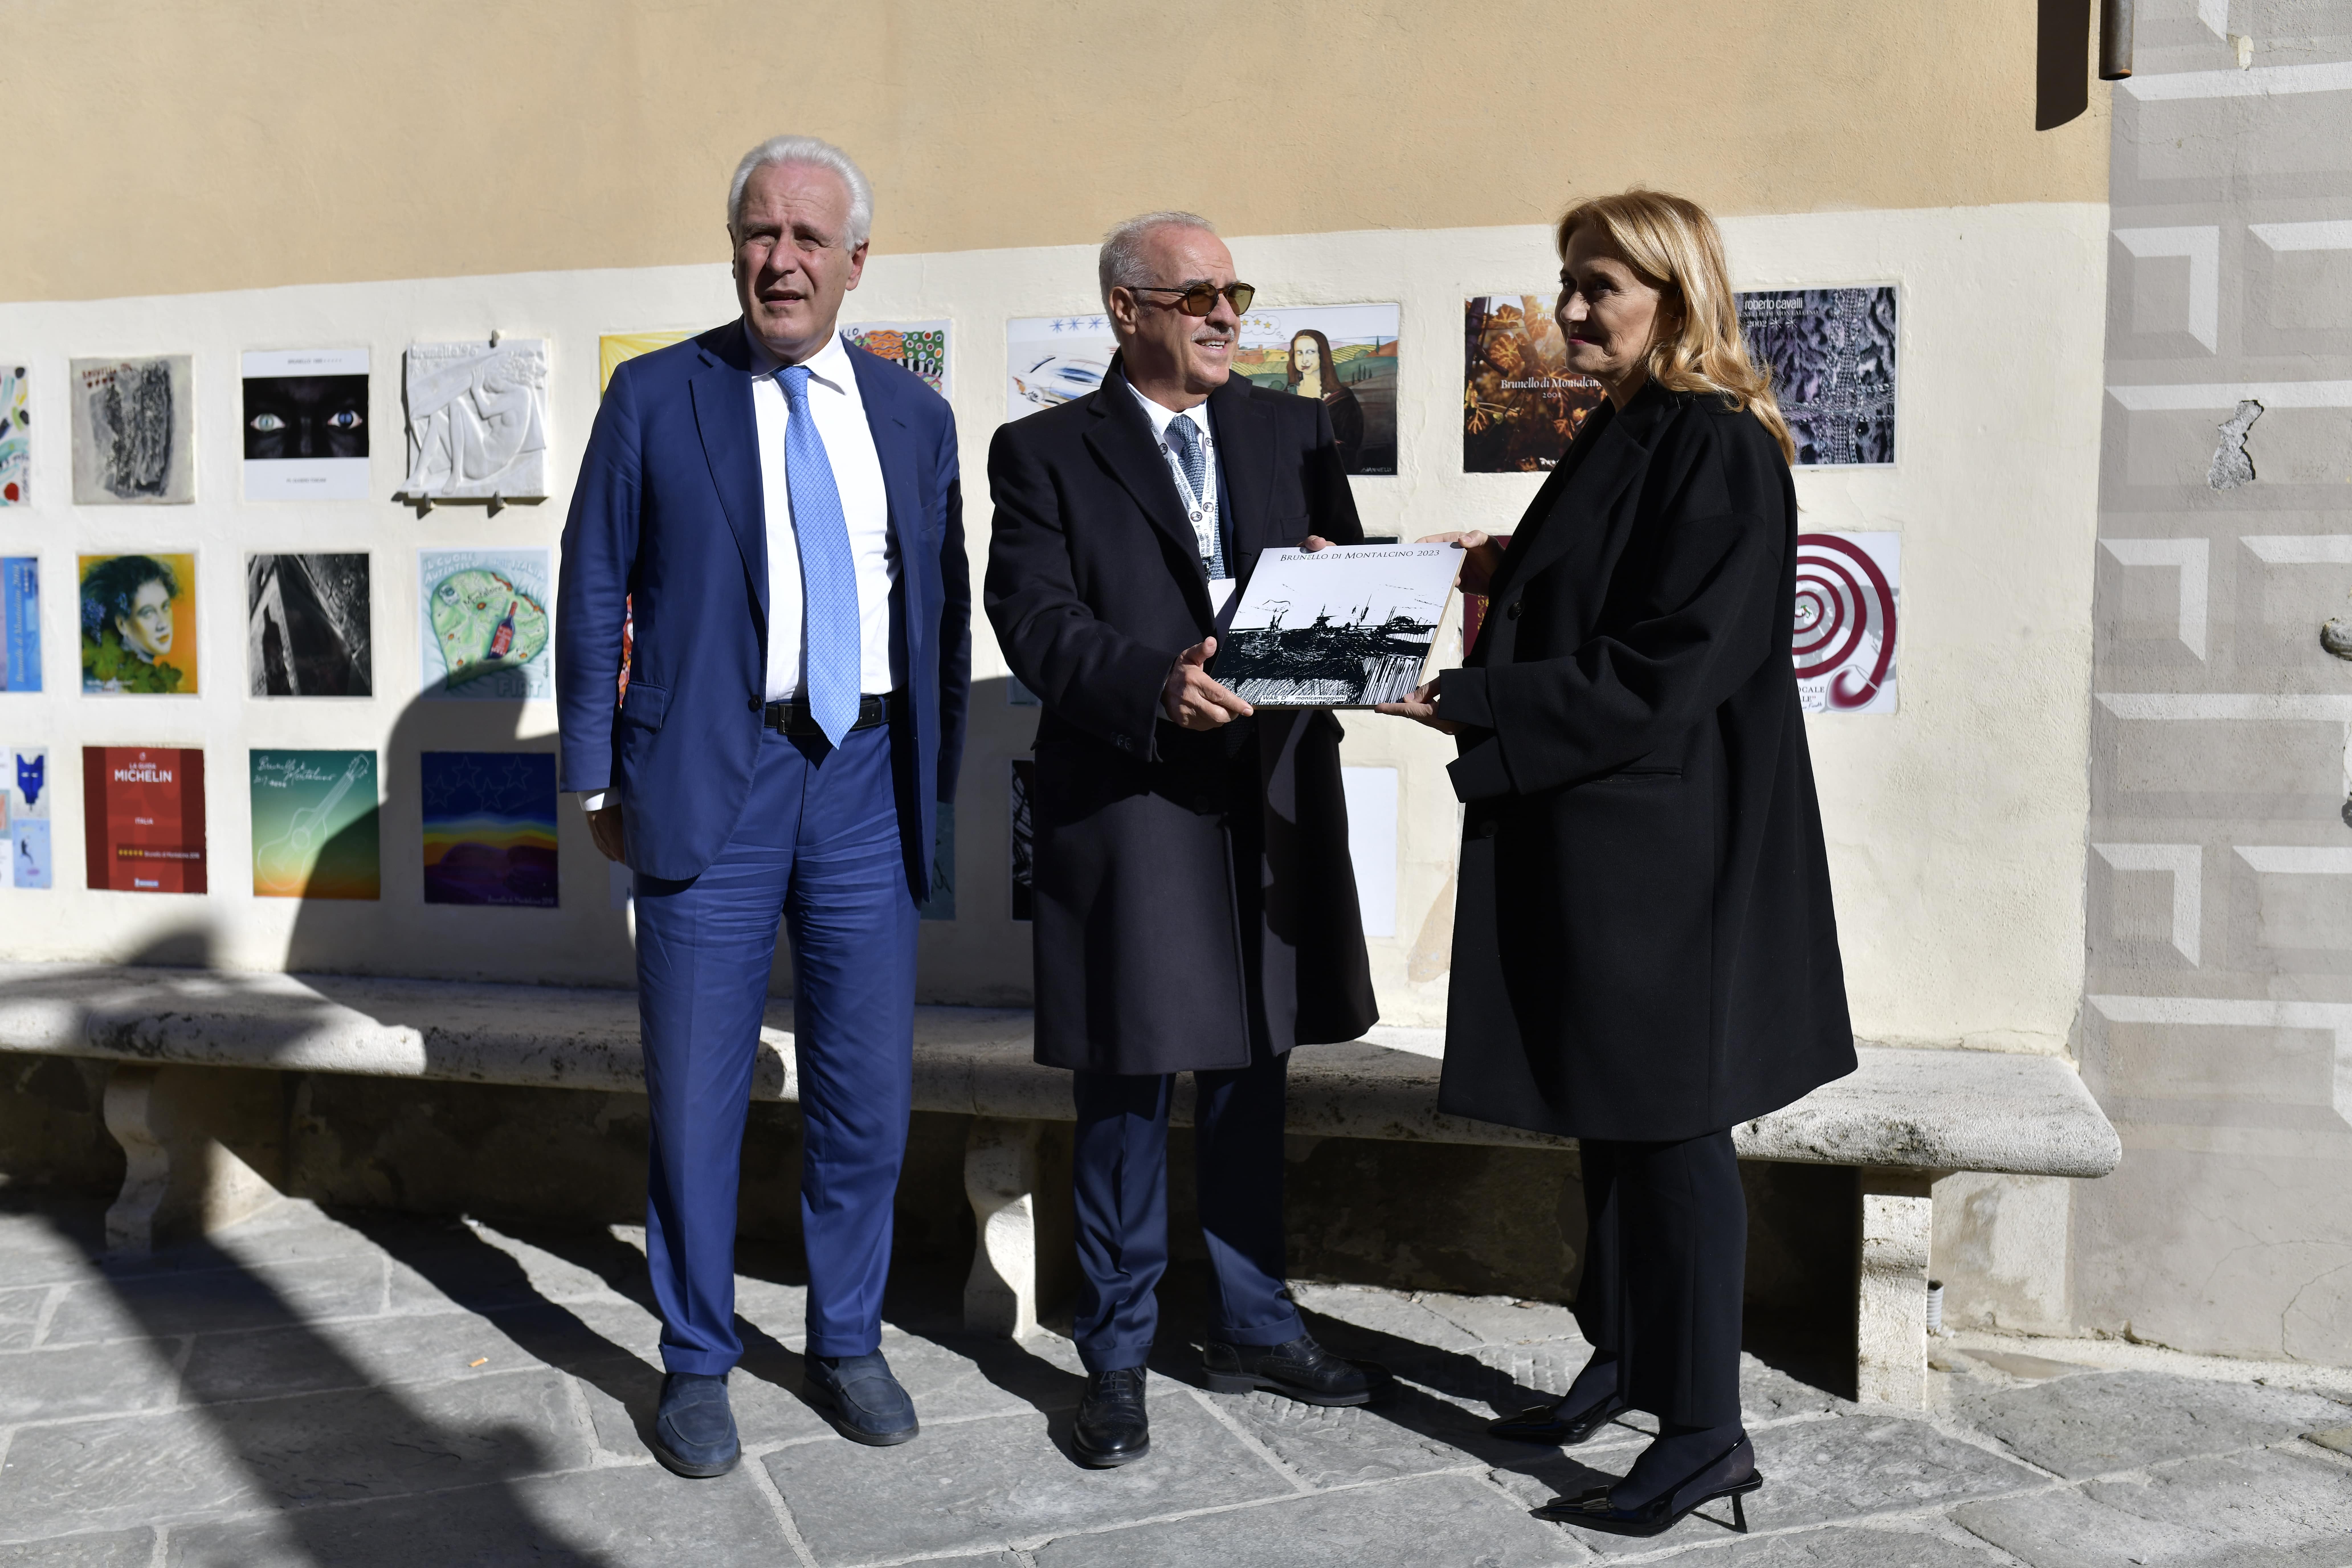 Lollobrigida celebra il miglior vino al mondo, "Benvenuto Brunello esalta il made in Italy" - Maggioni firma la piastrella 2023, Siena News.